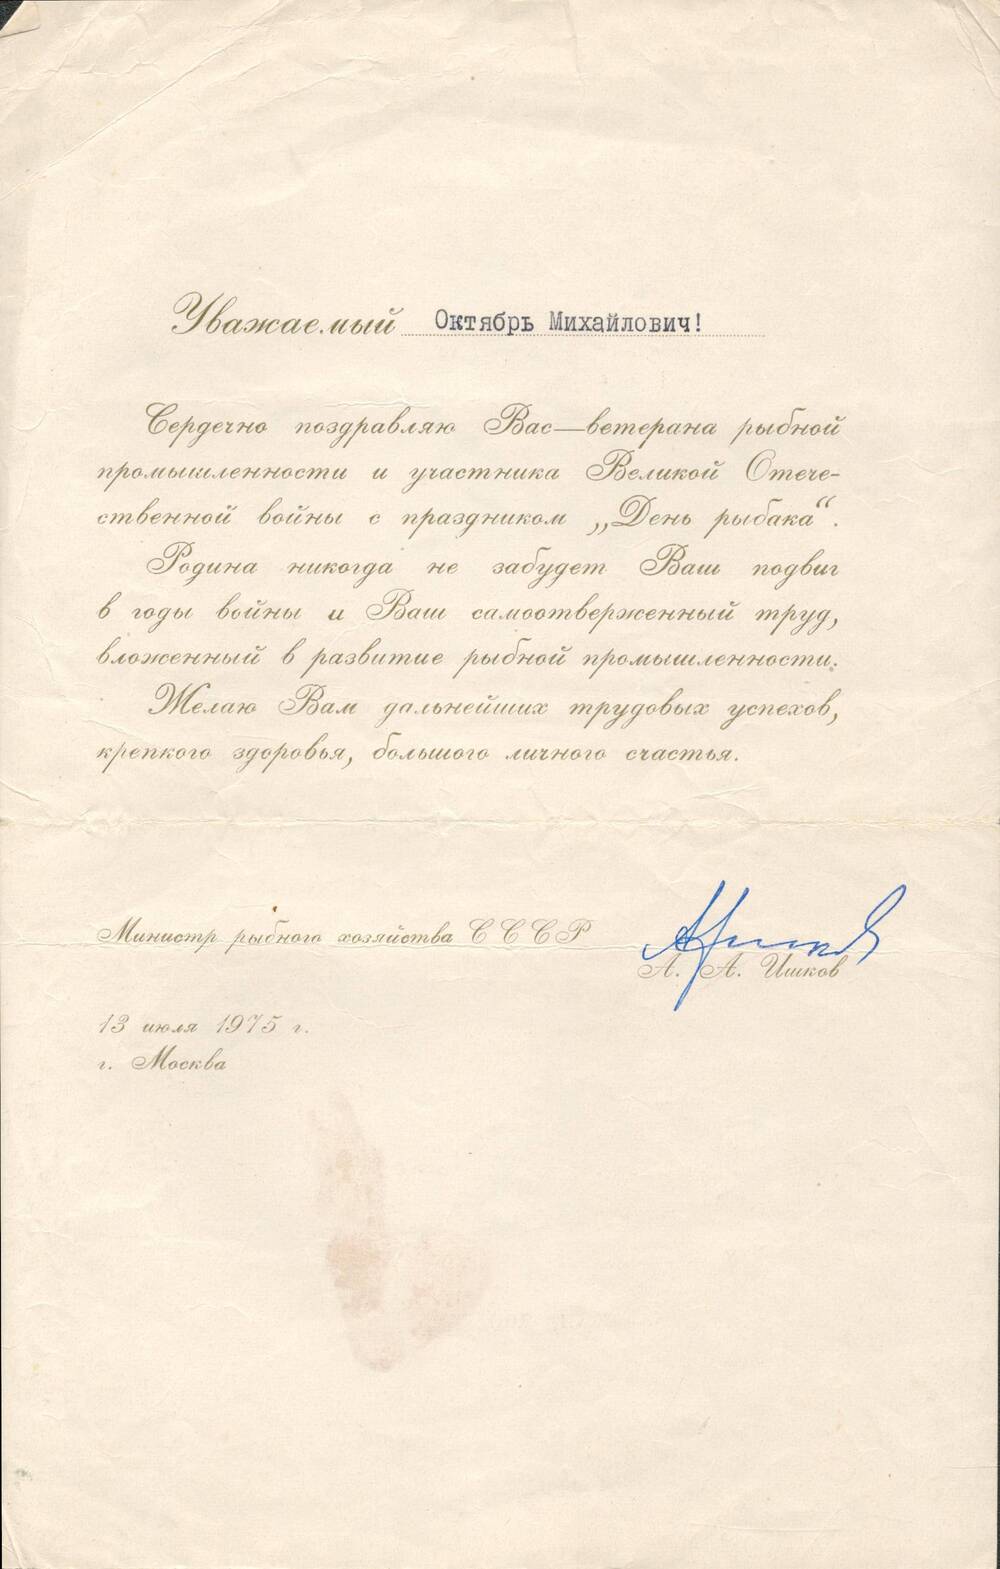 Поздравительное письмо Ломаева Октября Михайловича.